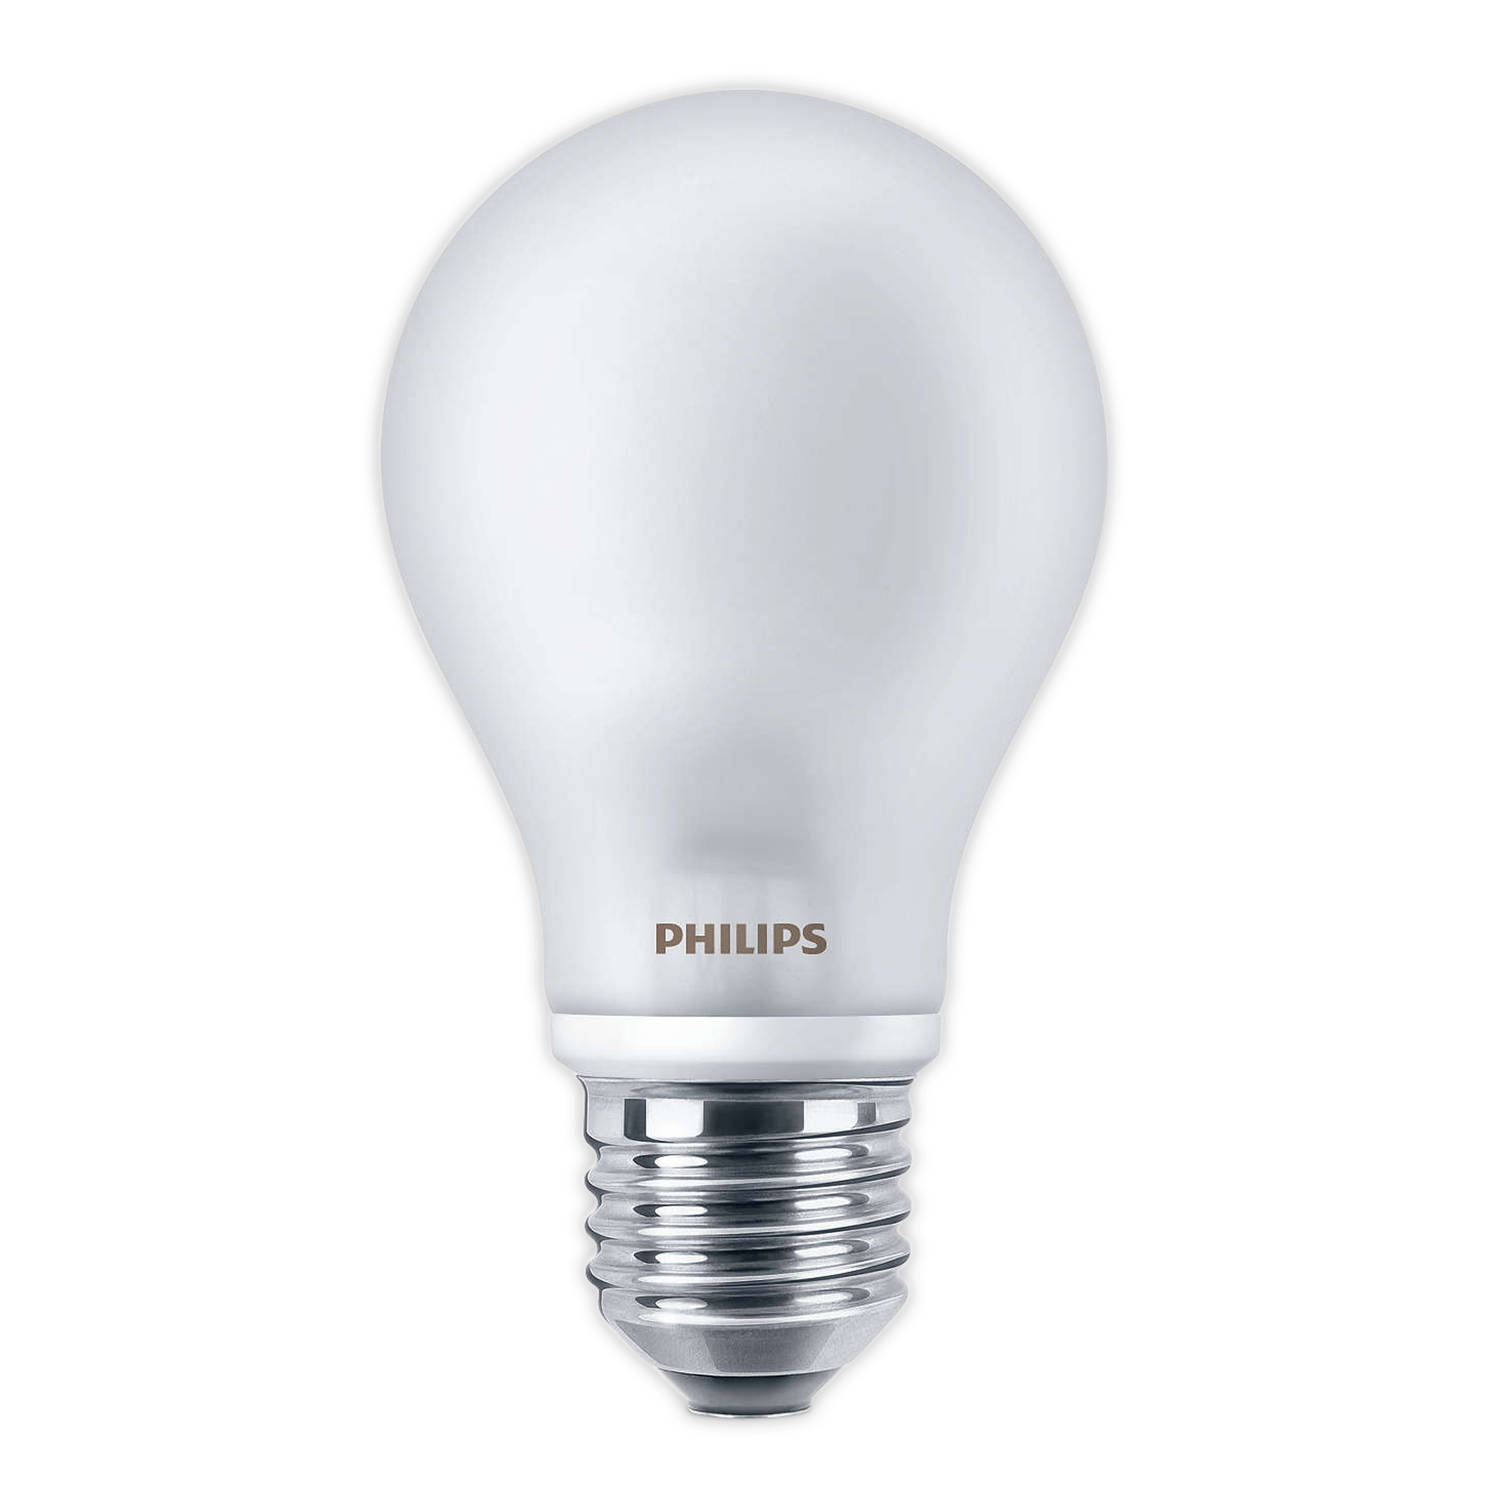 Probleem Oriënteren Product Philips LED bulb - 40 watt | Blokker